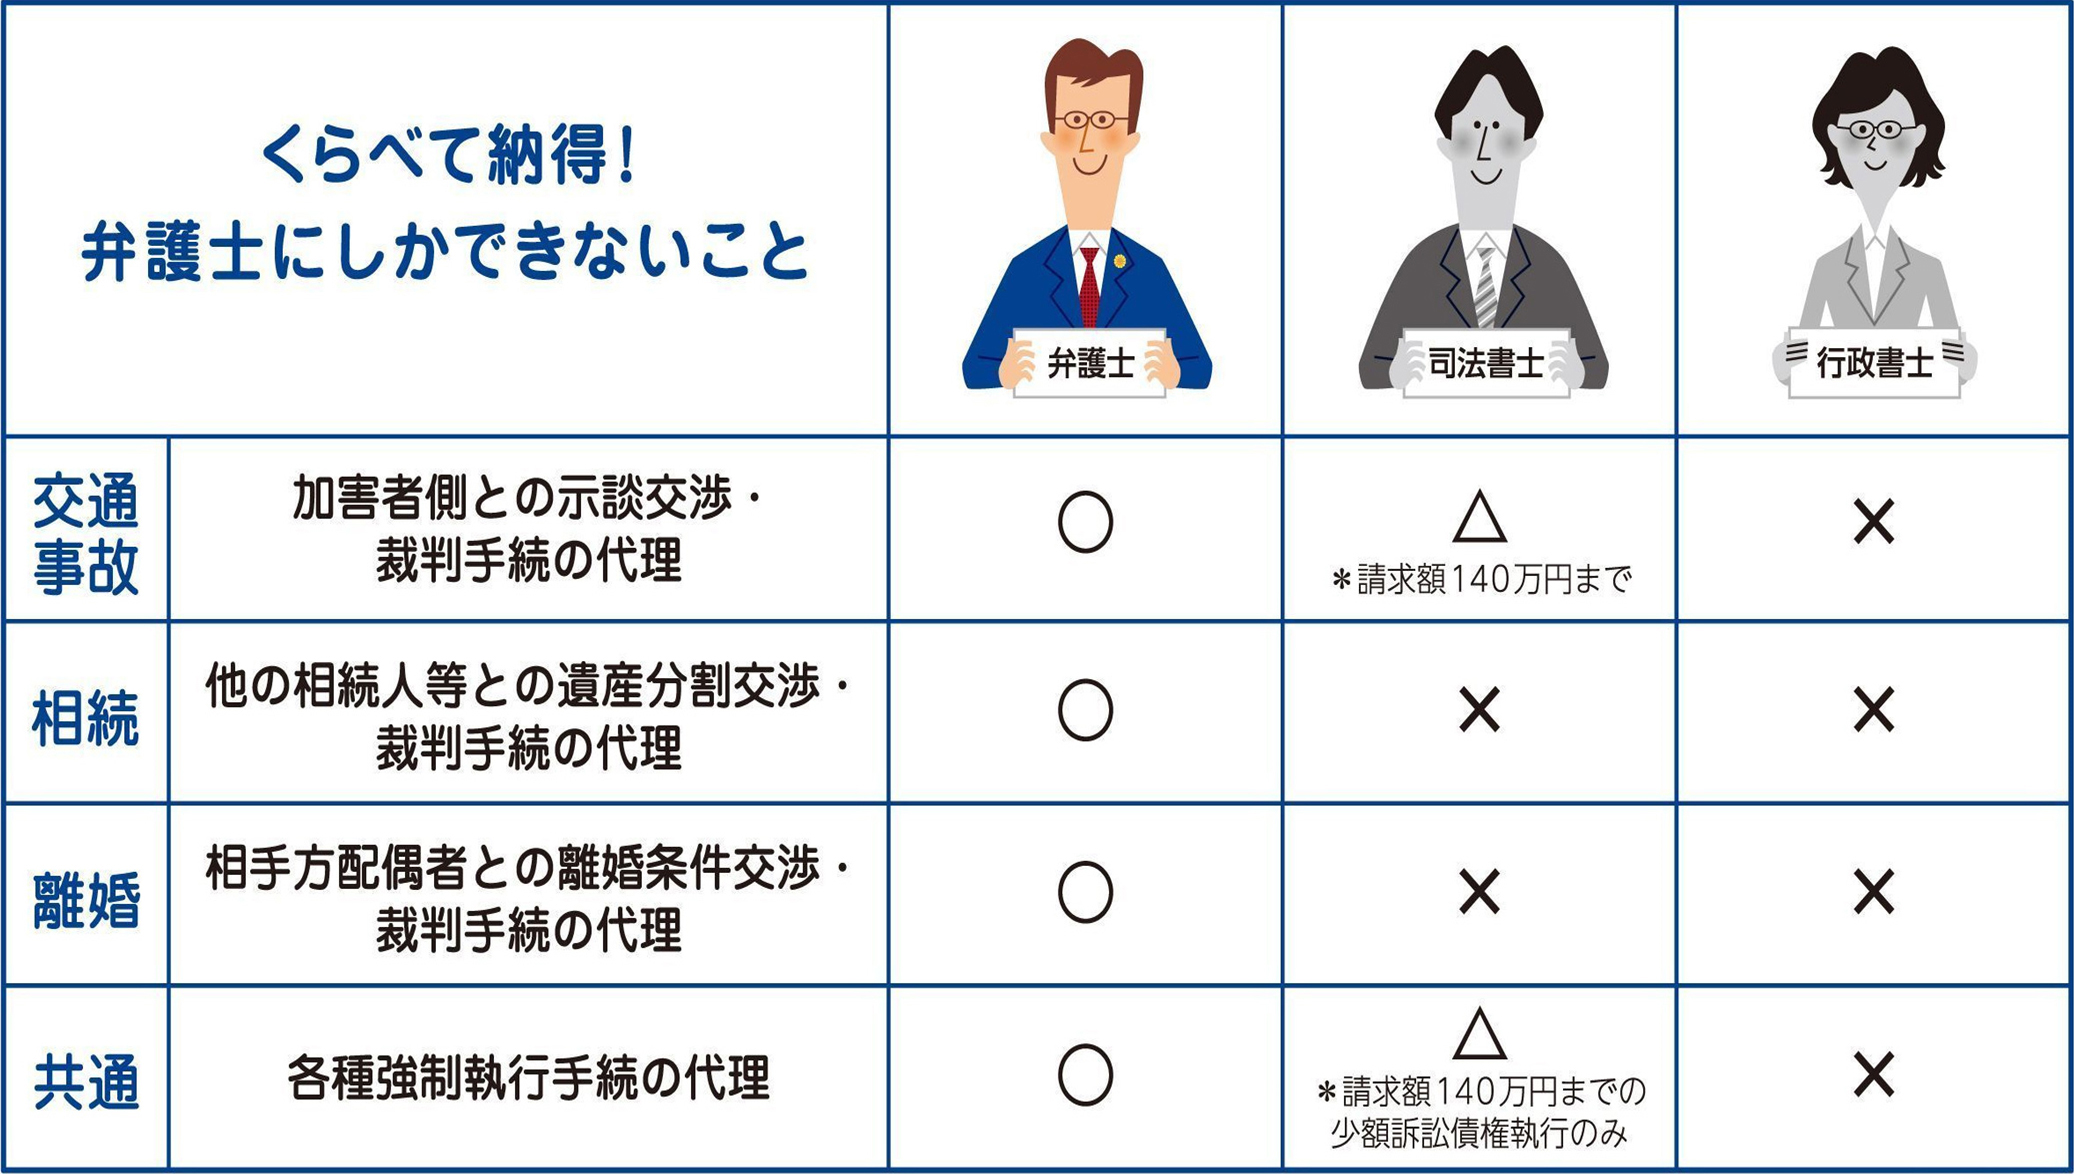 弁護士とその他の資格の比較表（日本弁護士連合会作成）